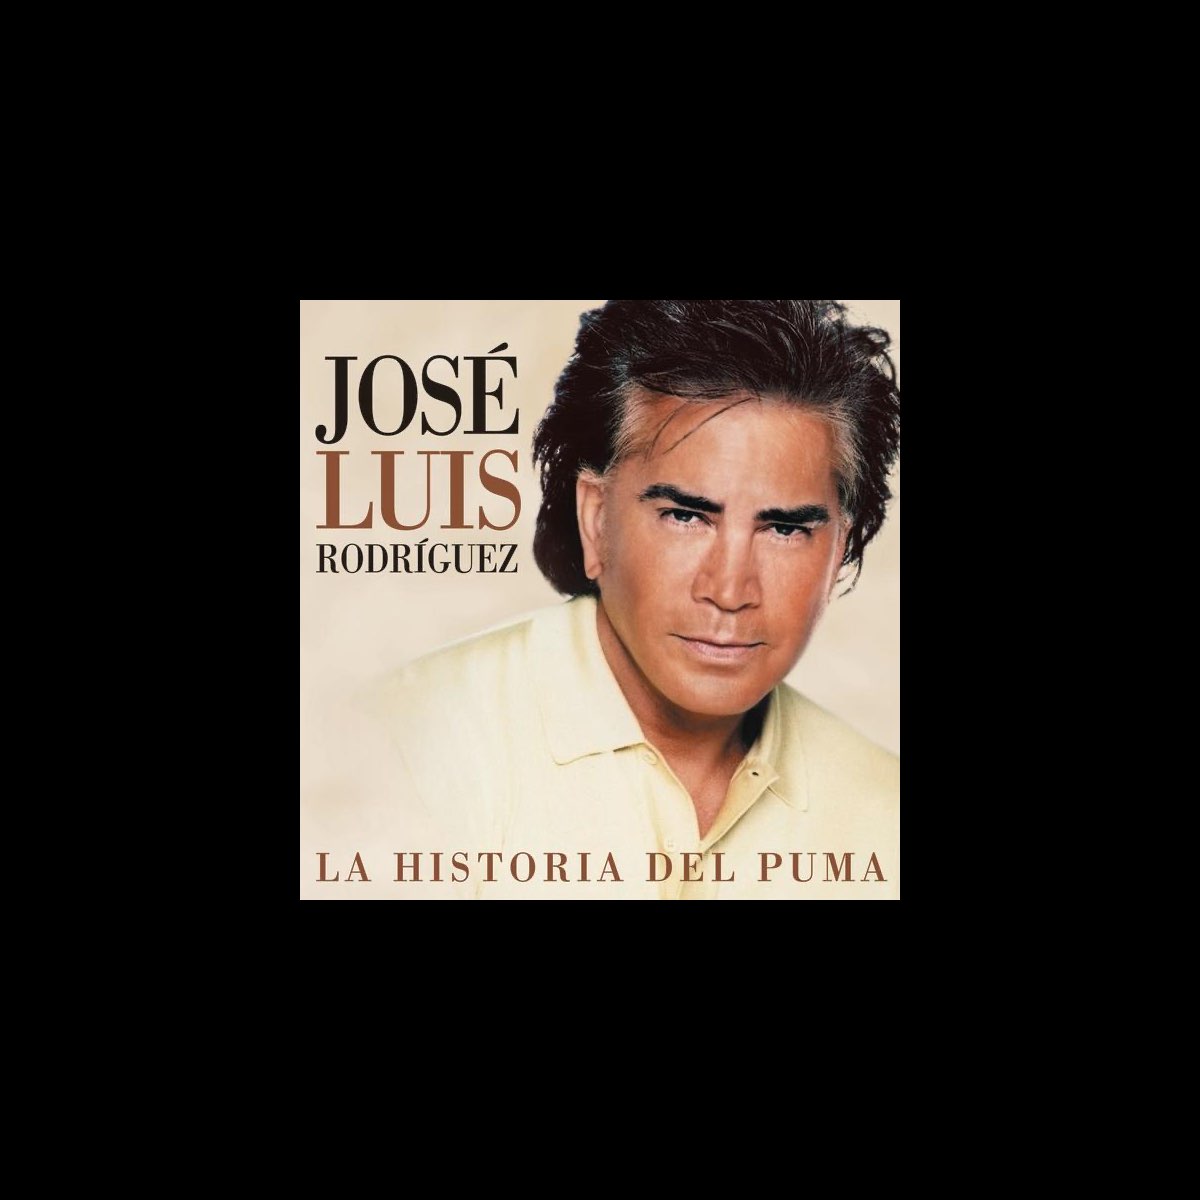 Vástago Chapoteo sensibilidad La Historia del Puma by José Luis Rodríguez on Apple Music